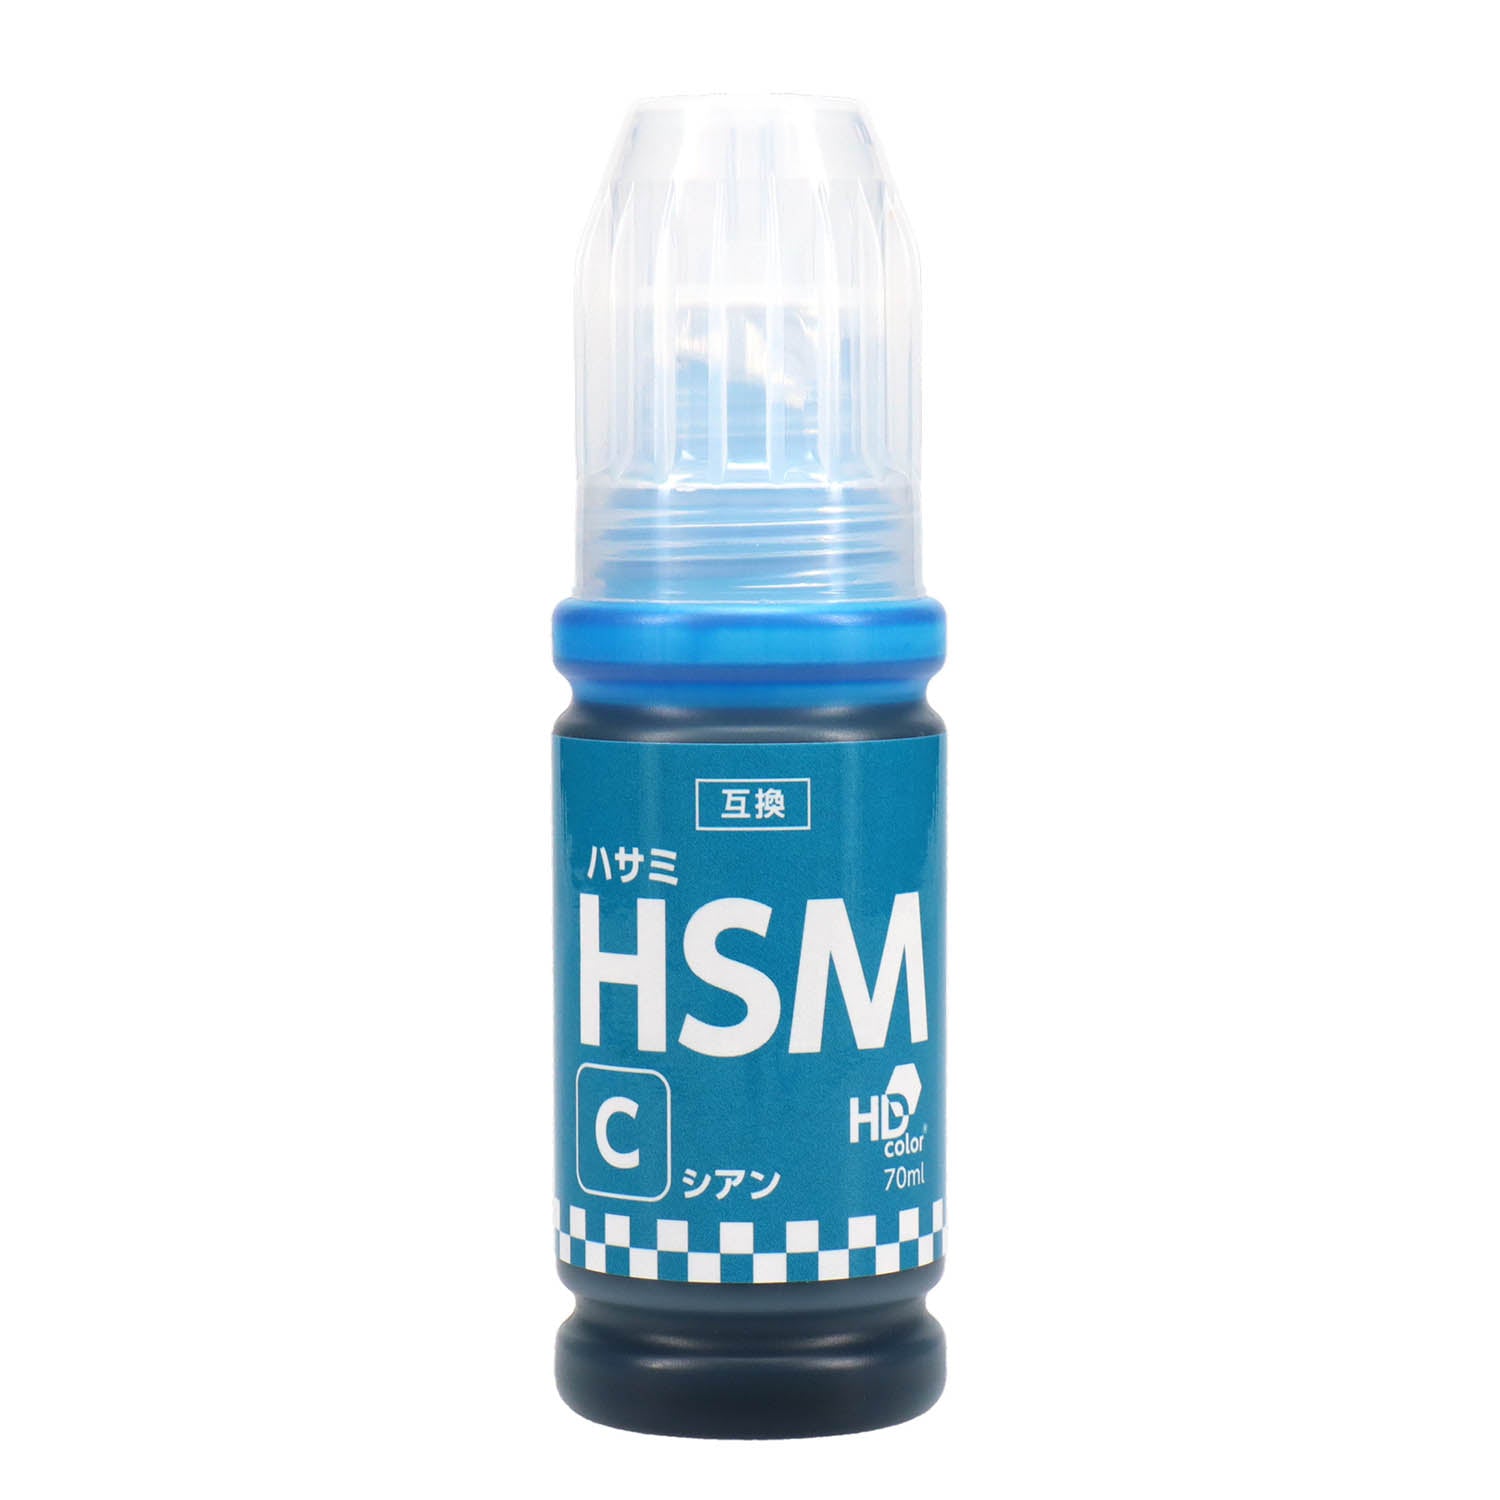 エプソン用 HSM-C (ハサミ) 互換インクボトル シアン